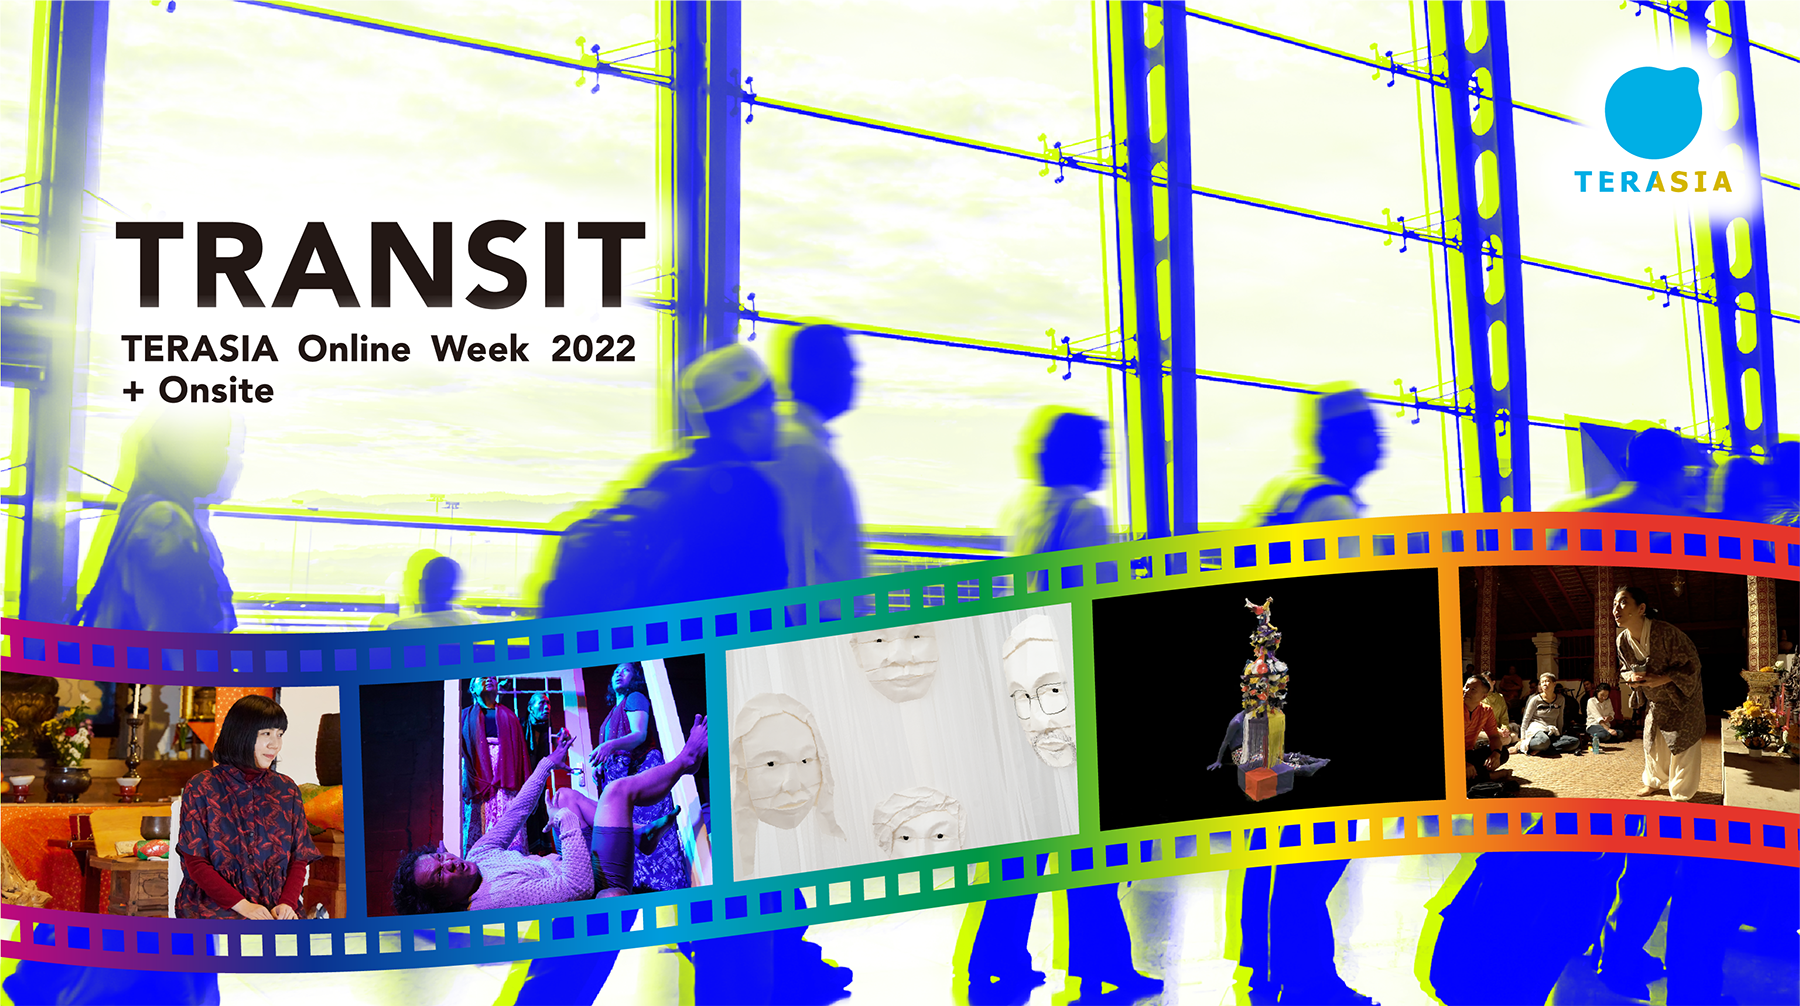 Announcing TERASIA Online Week 2022 + Onsite!